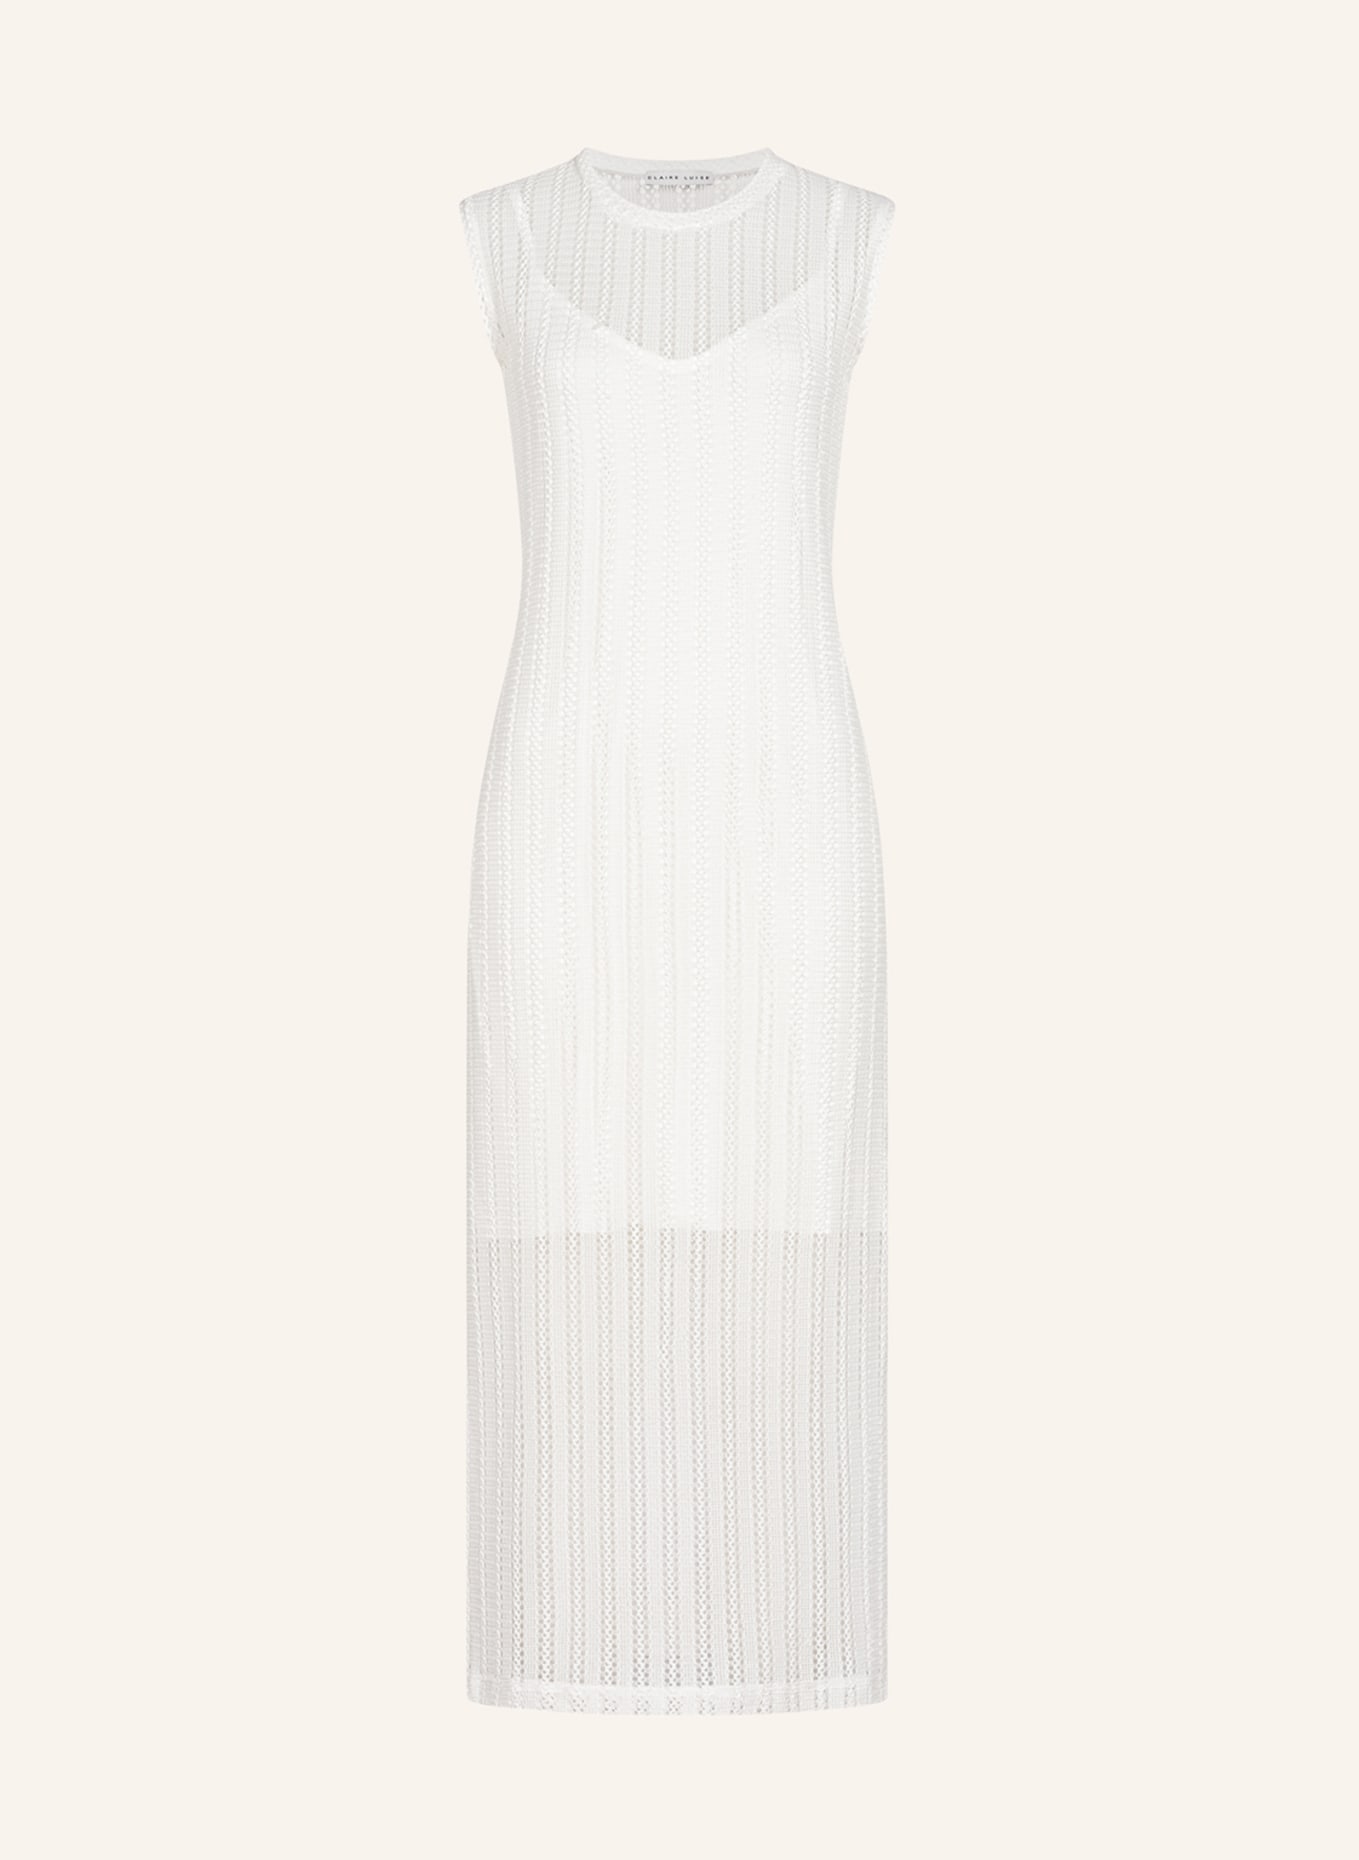 CLAIRE LUISE Kleid, Farbe: ECRU (Bild 1)